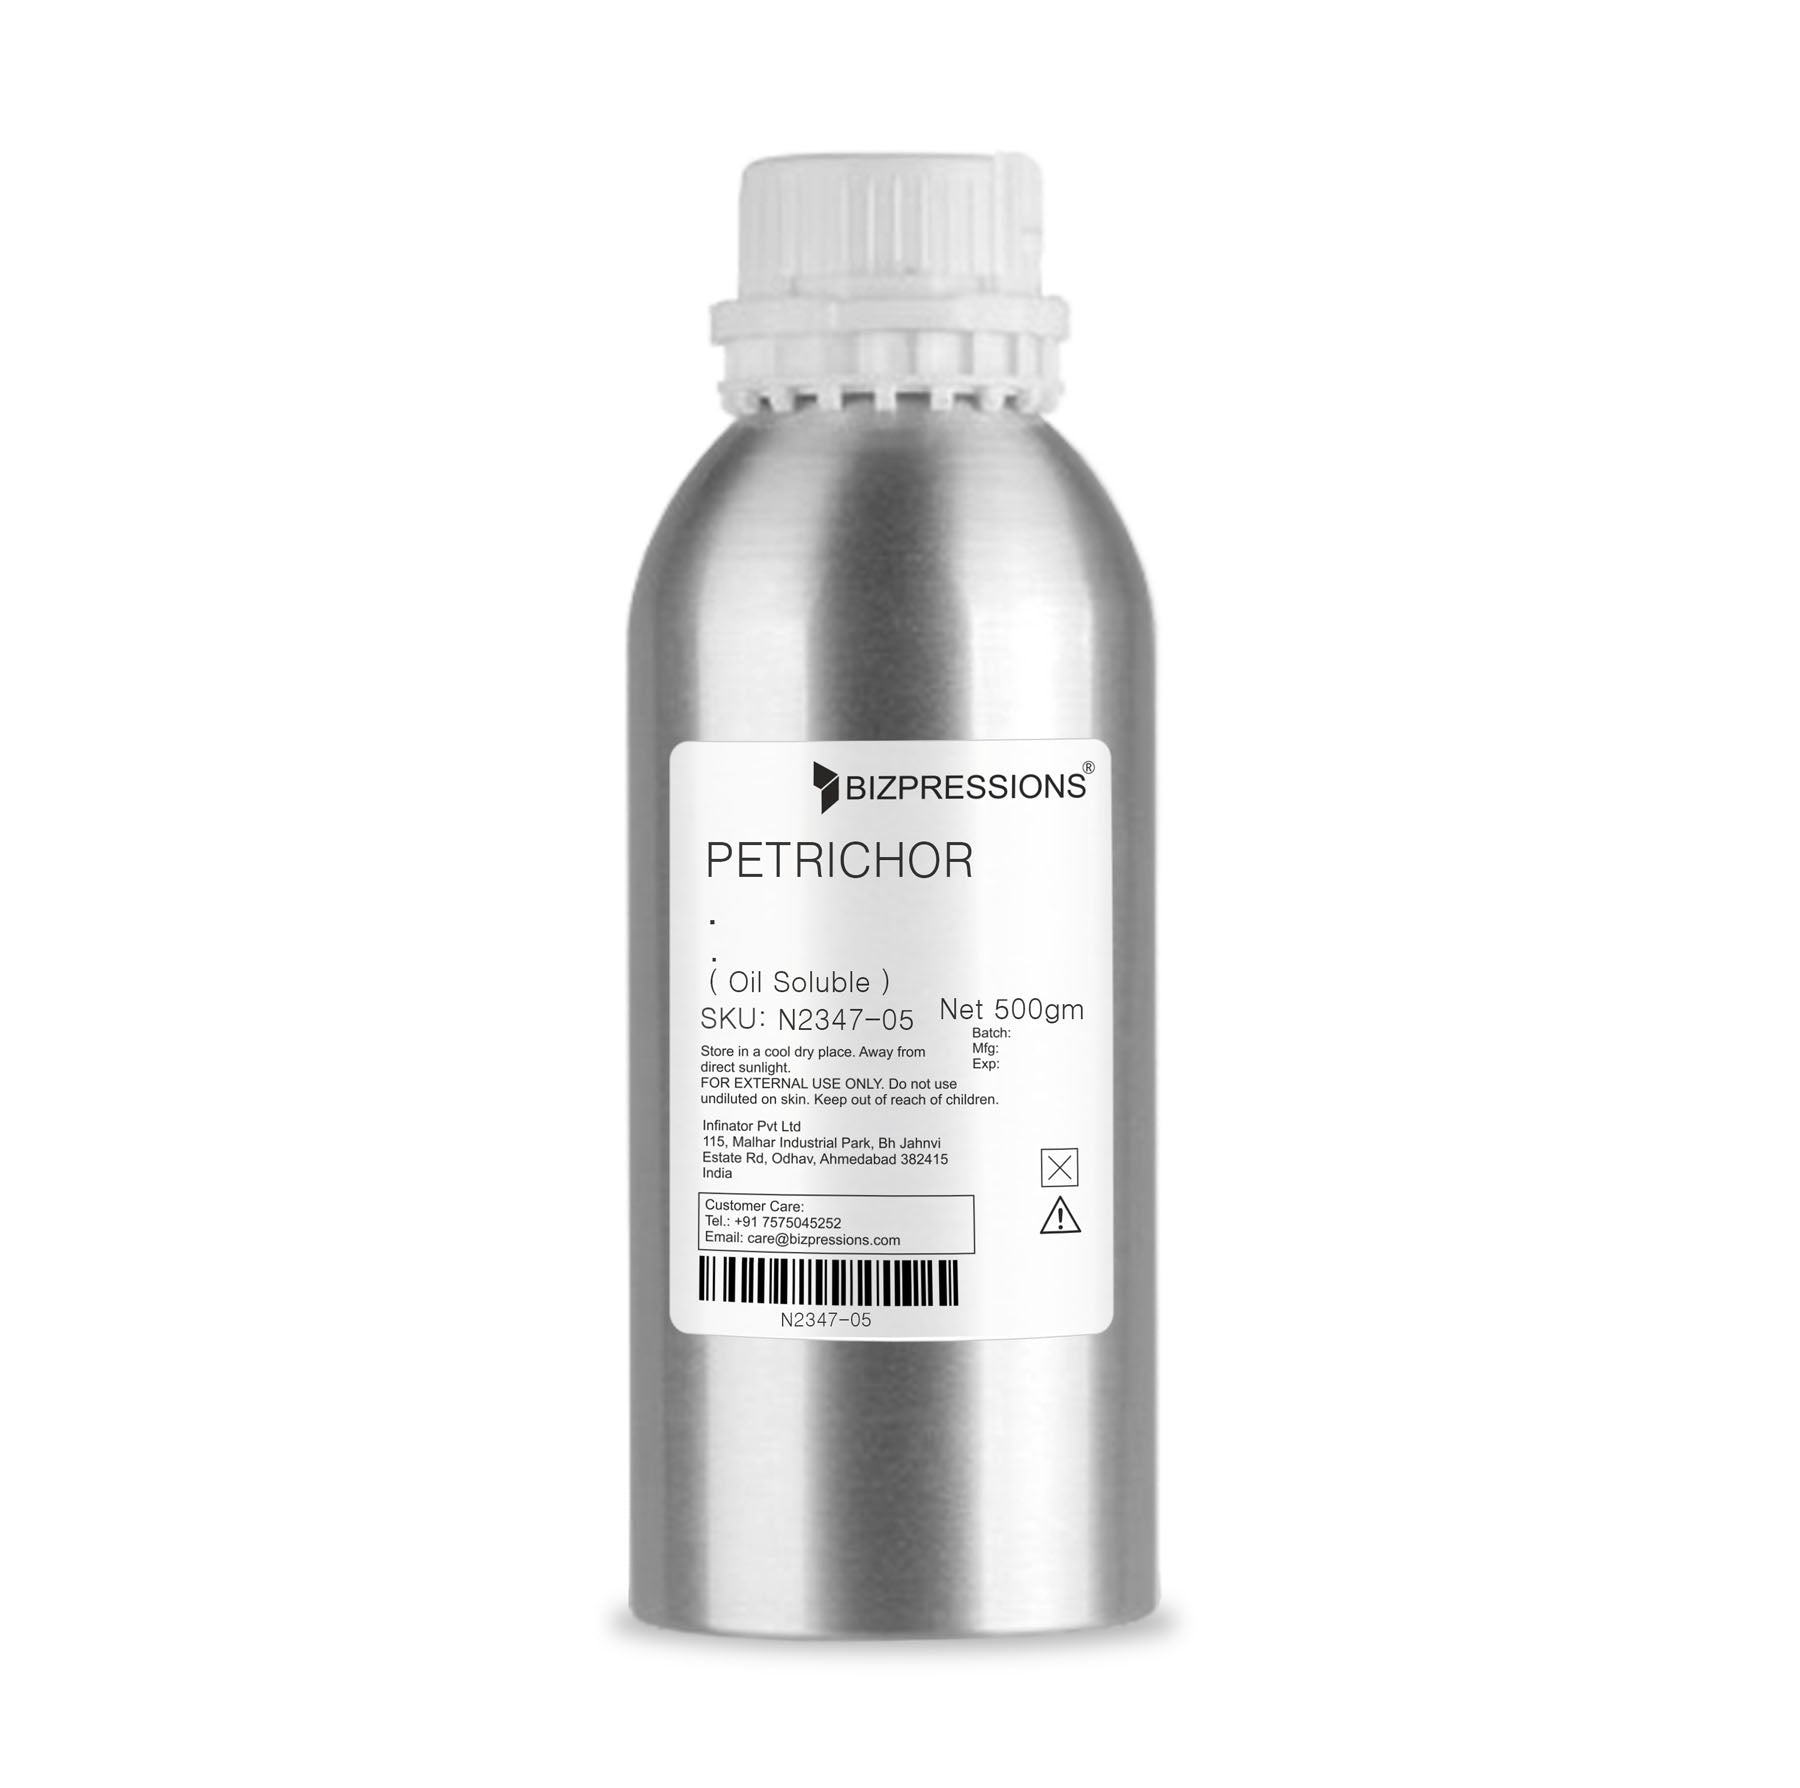 PETRICHOR - Fragrance ( Oil Soluble ) - 500 gm